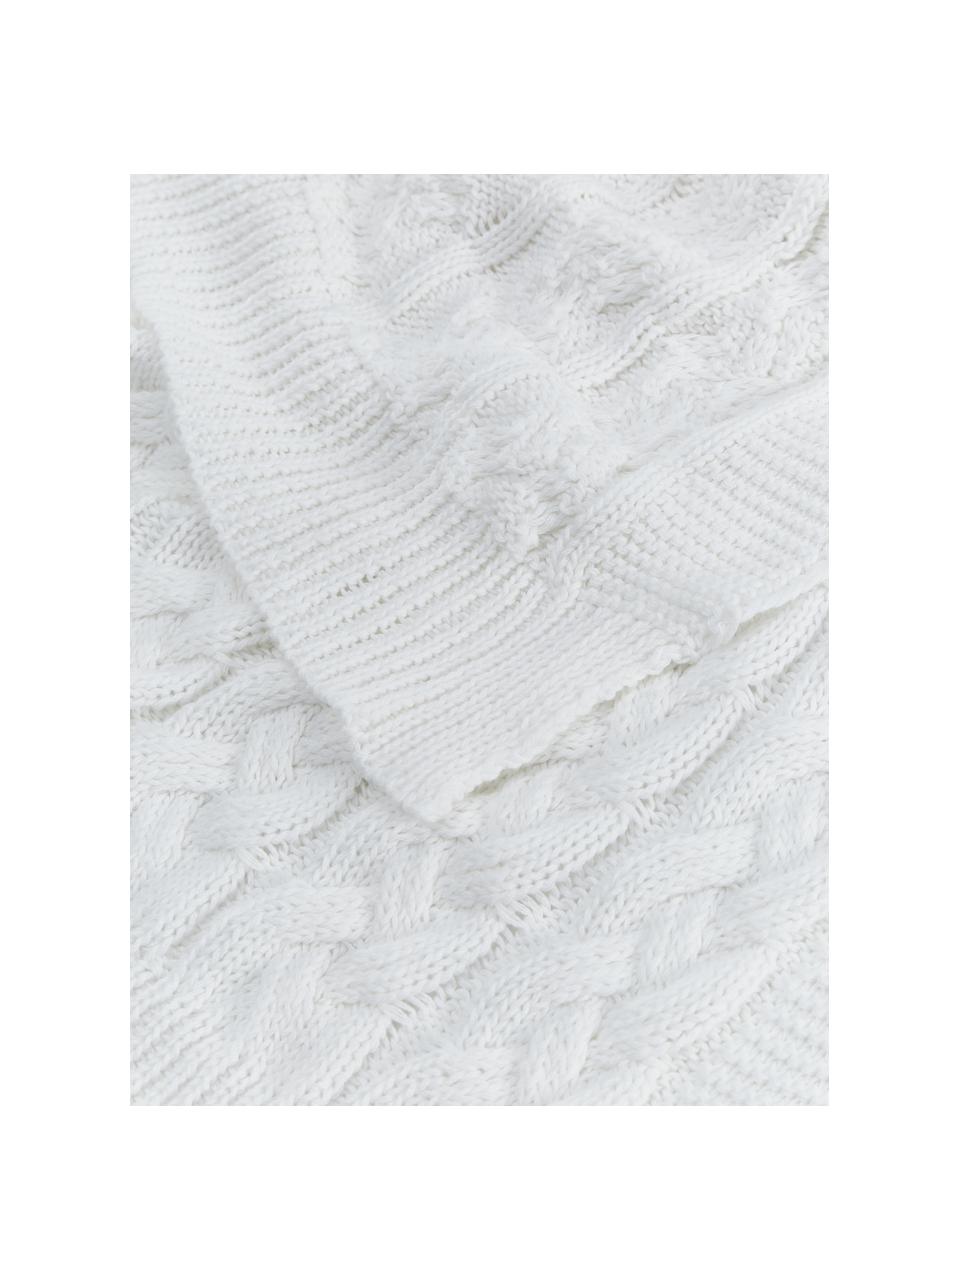 Coperta fatta a maglia bianca Caleb, 100% cotone pettinato, Bianco, Larg. 130 x Lung. 170 cm